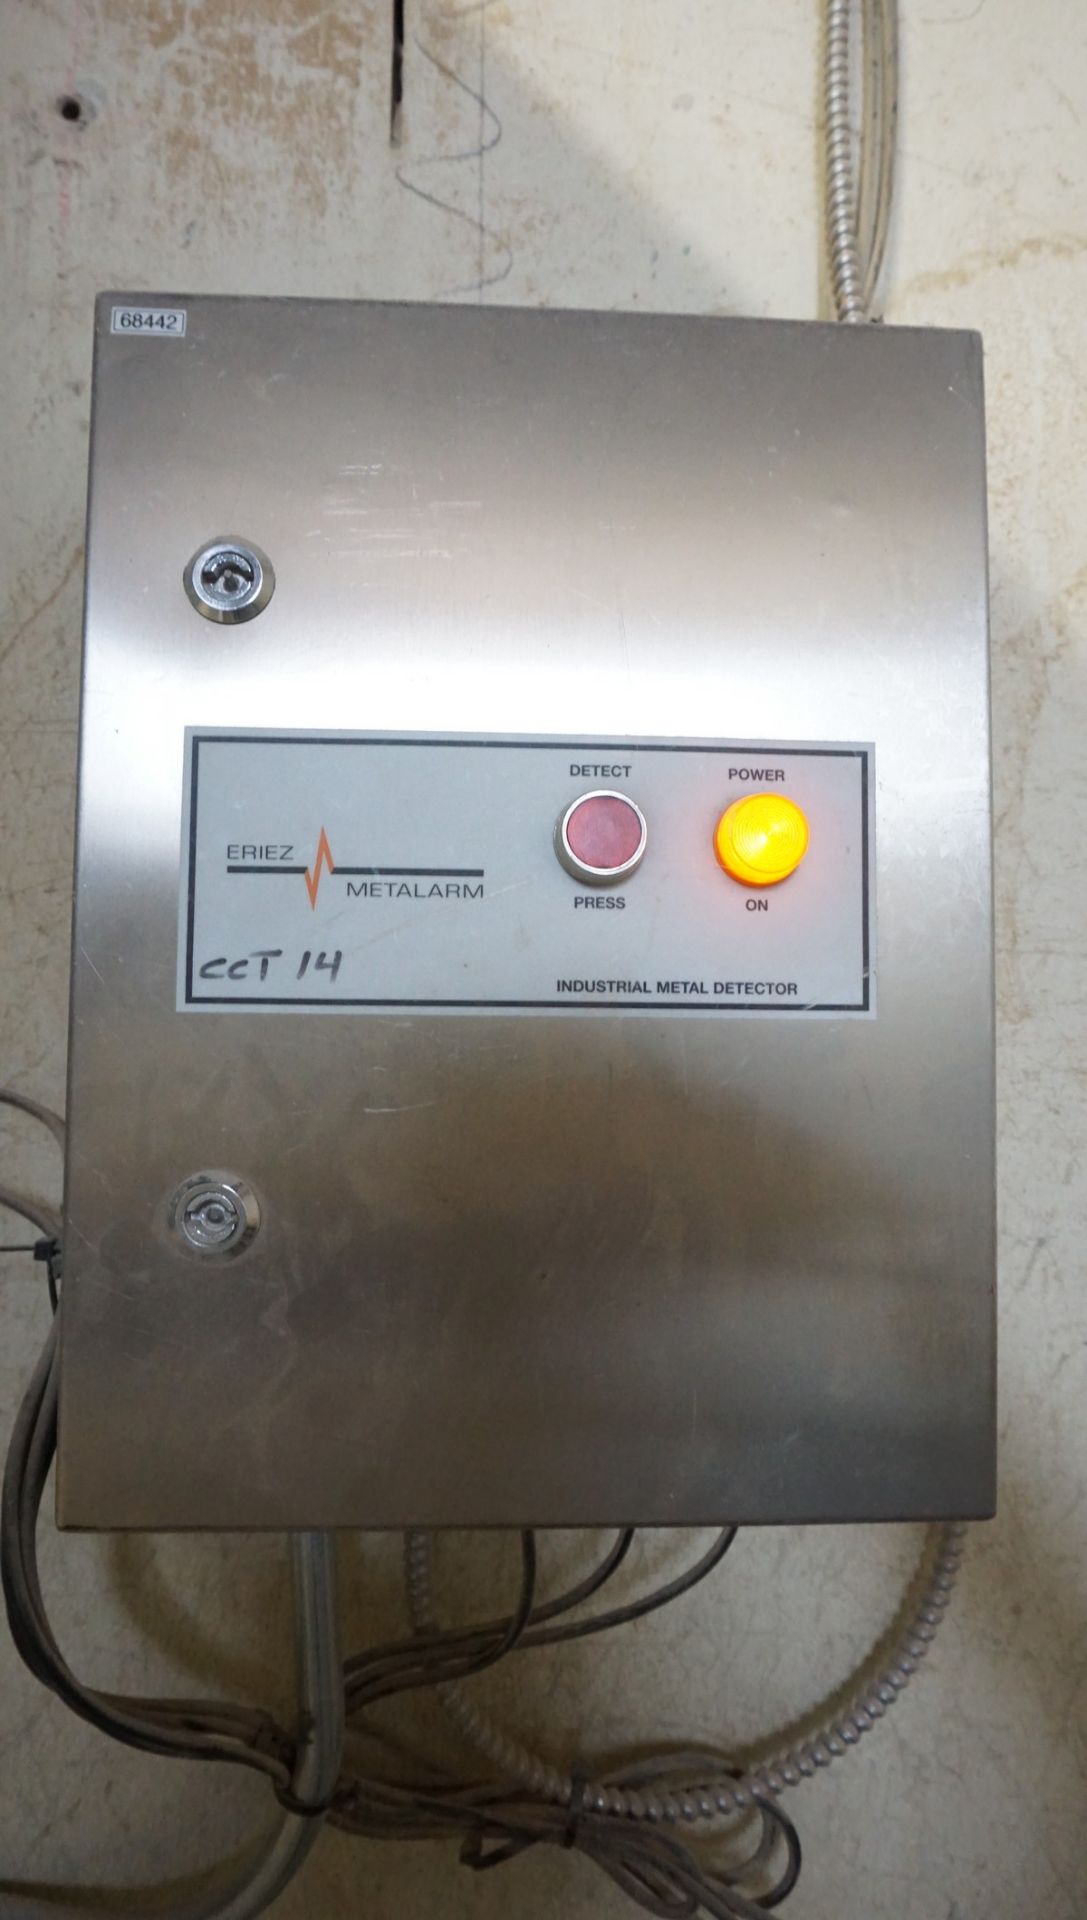 Eriez Industrial Metal Detector